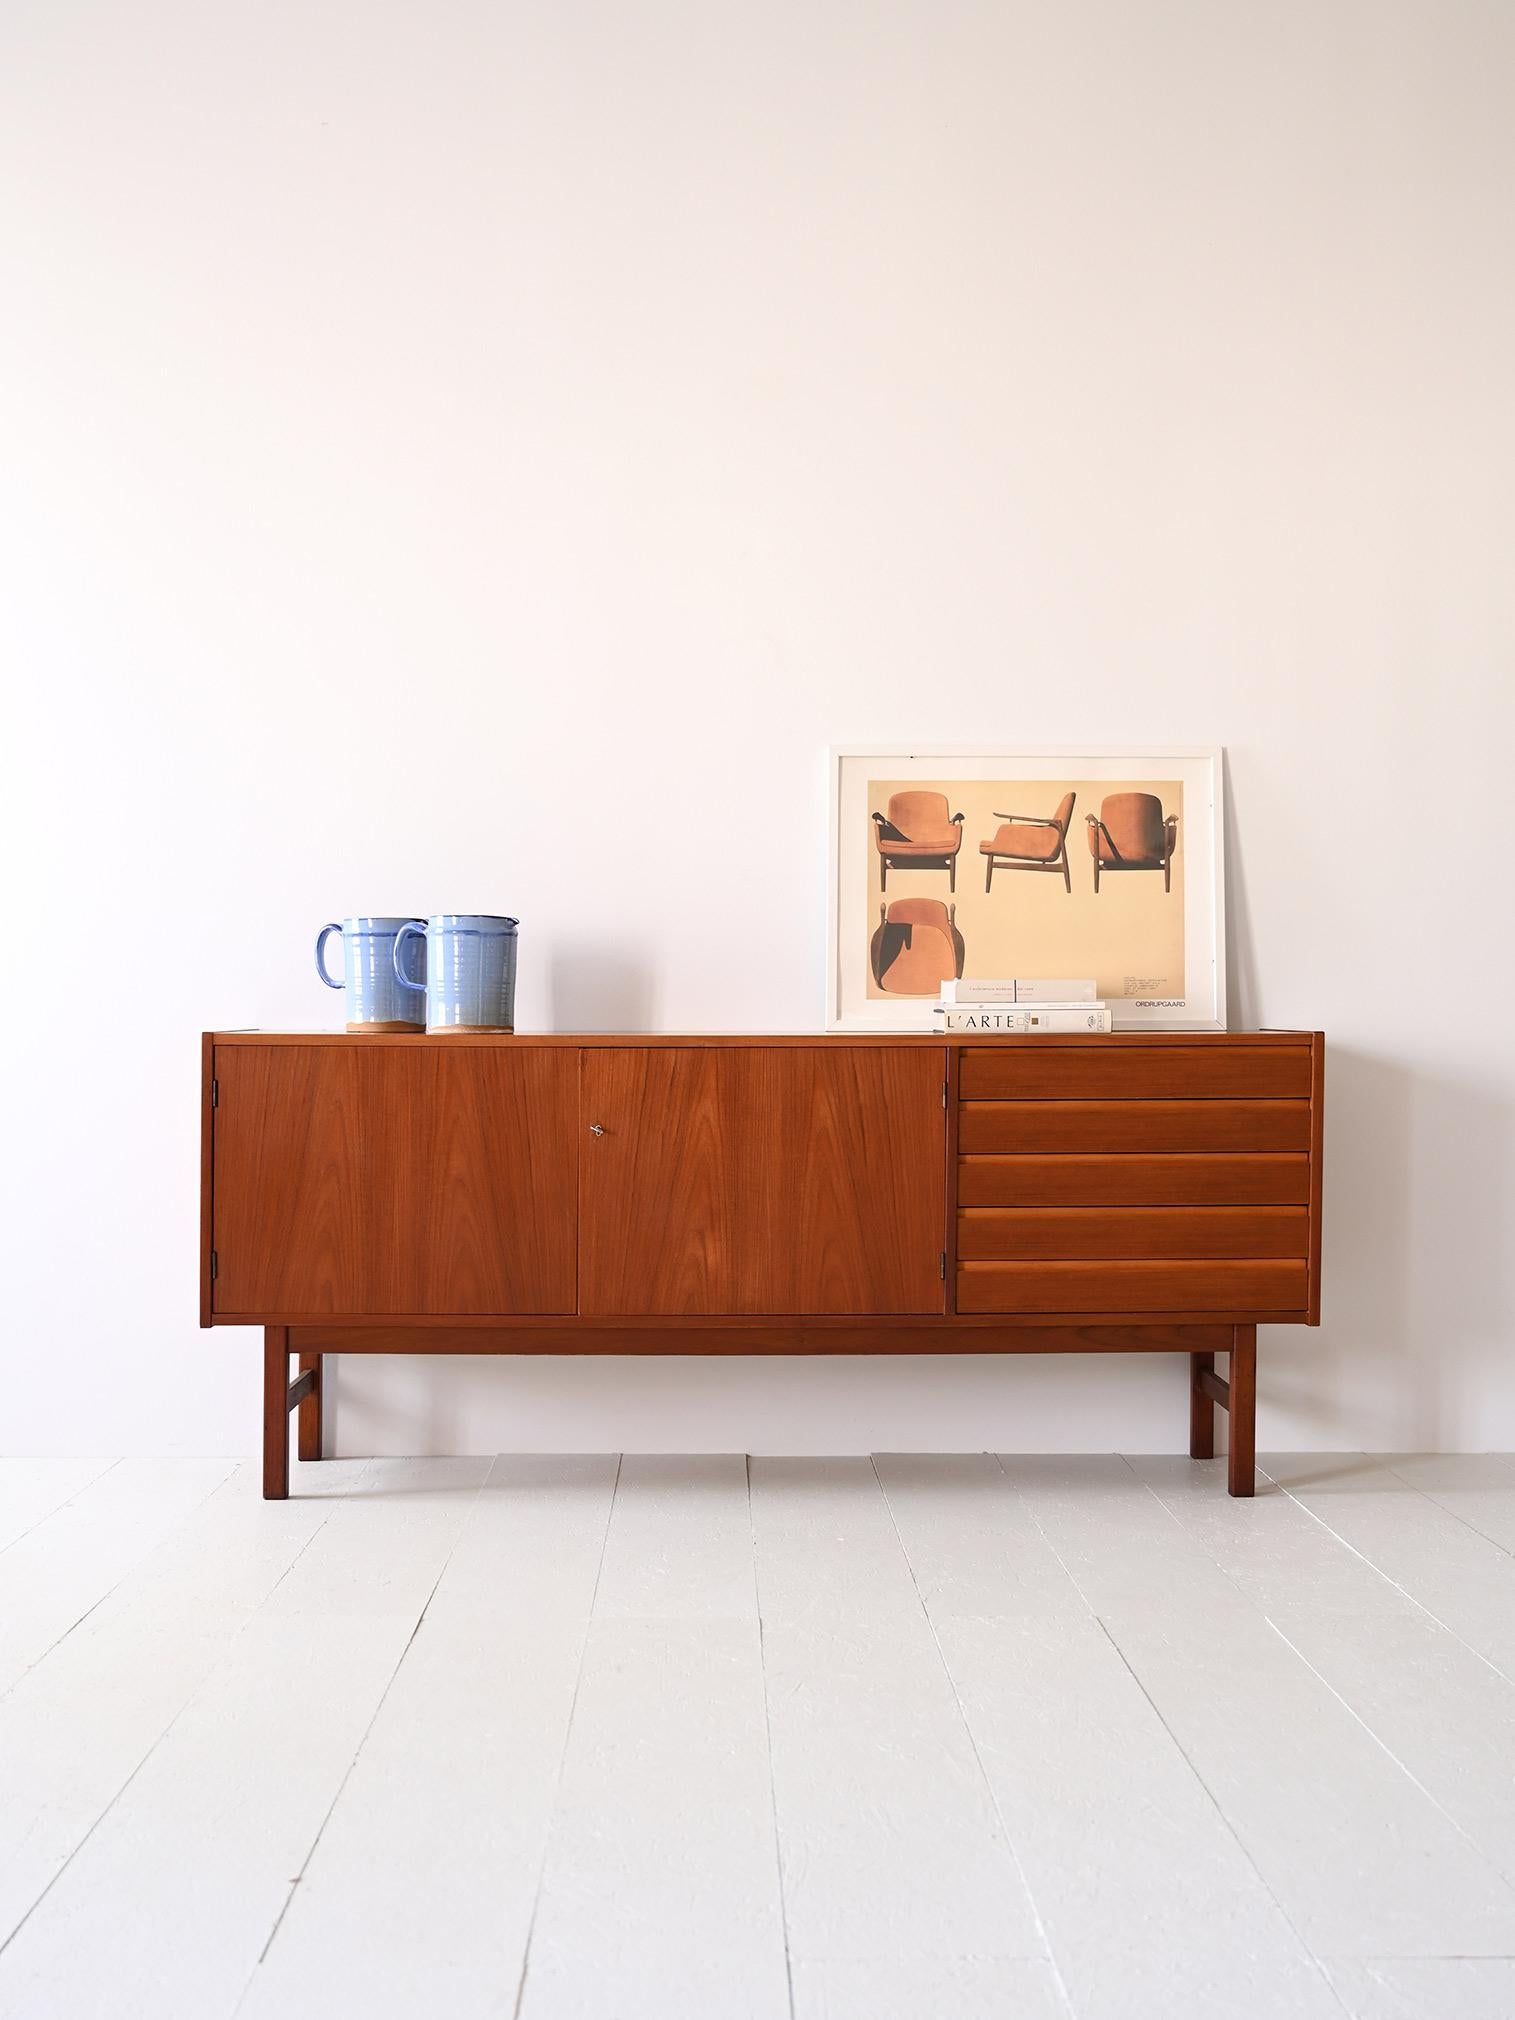 Buffet des années 1960 conçu par Erik Worts pour Ikea.

Un meuble antique moderne suédois en excellent état qui retrace le goût et le style du milieu du siècle.
Formé d'un cadre aux lignes épurées et minimales, il comporte 5 tiroirs avec poignée